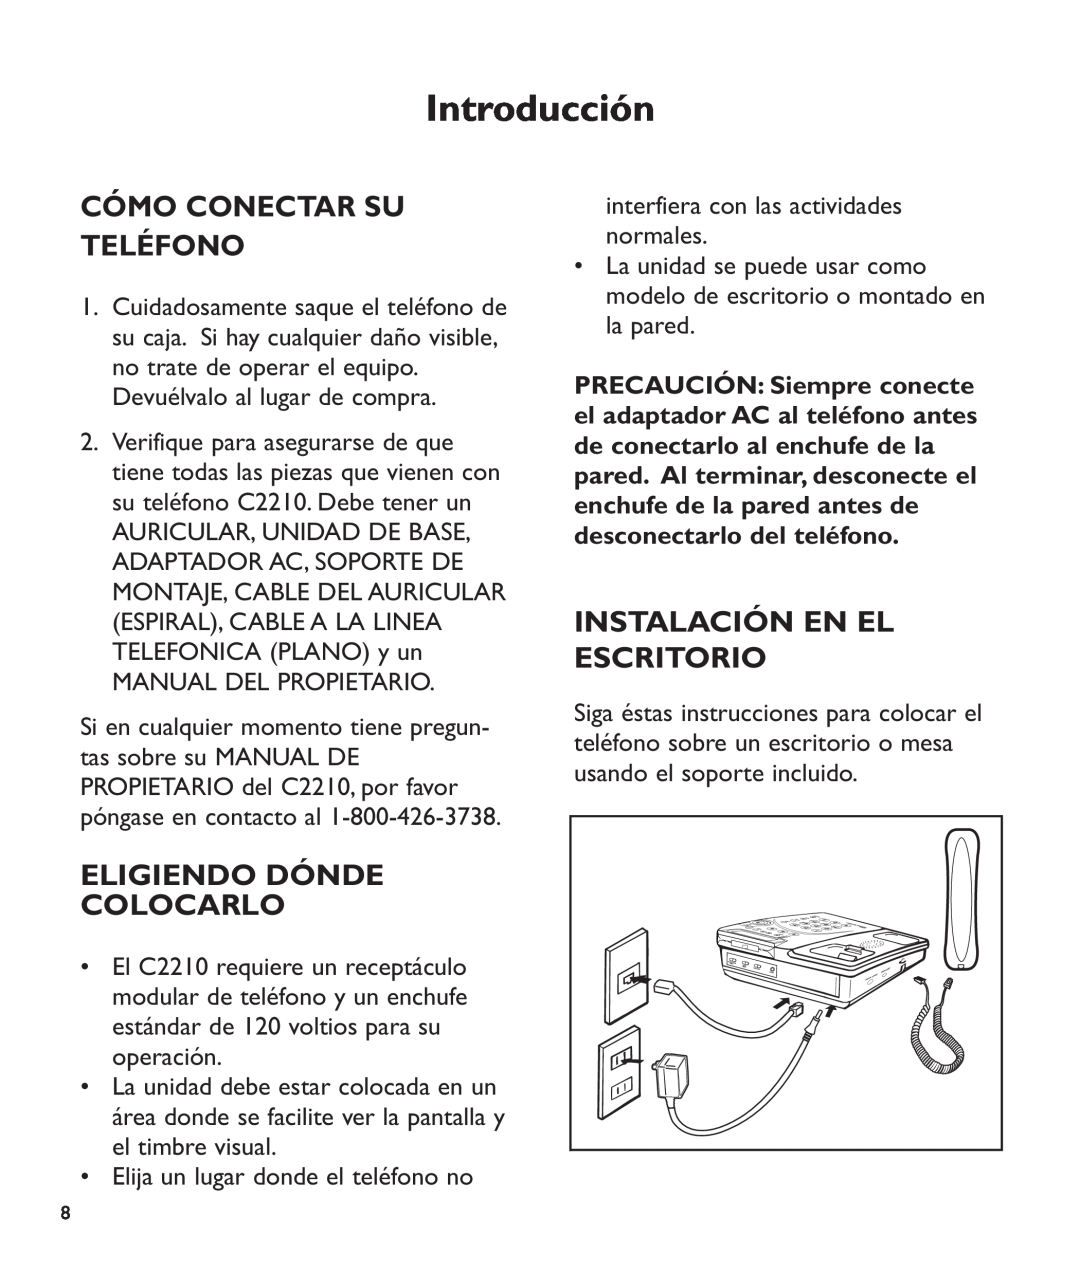 Clarity c2210 manual Cómo Conectar Su Teléfono, Eligiendo Dónde Colocarlo, Instalación En El Escritorio, Introducción 